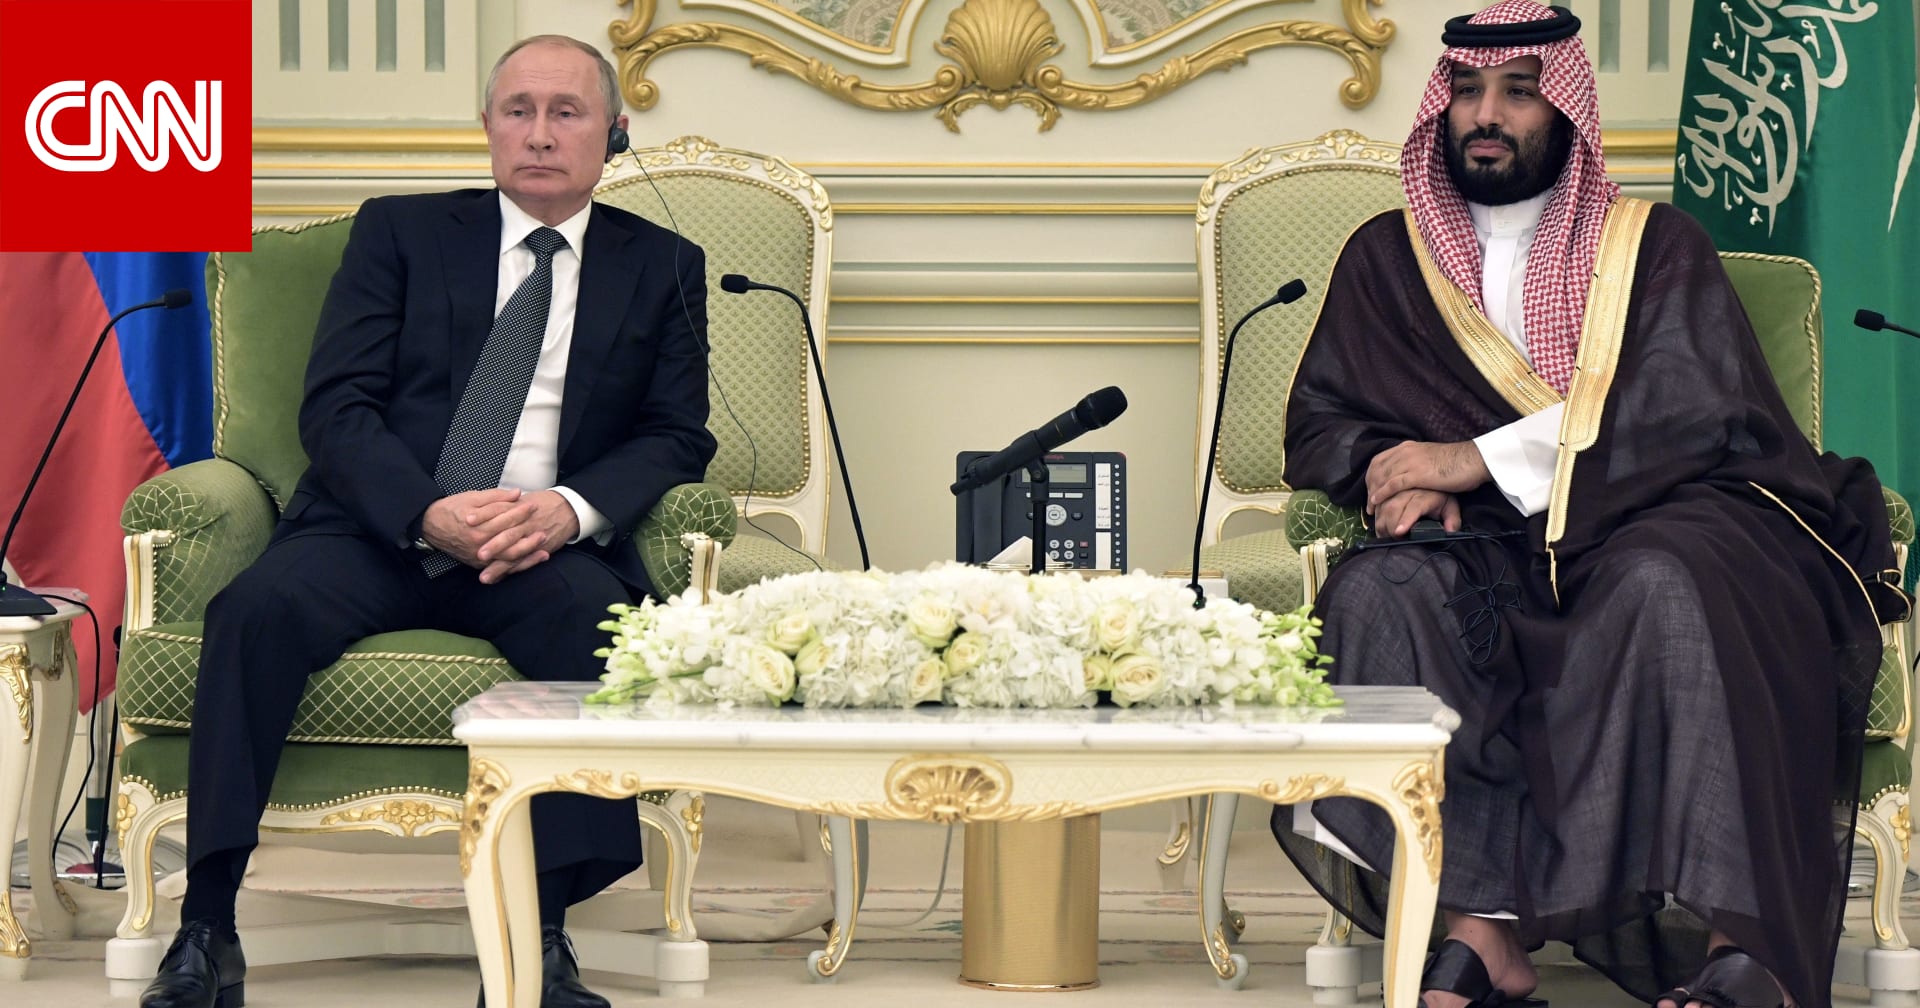 ولي العهد السعودي يصطحب بوتين في جولة في المنطقة التي شهدت تأسيس المملكة 